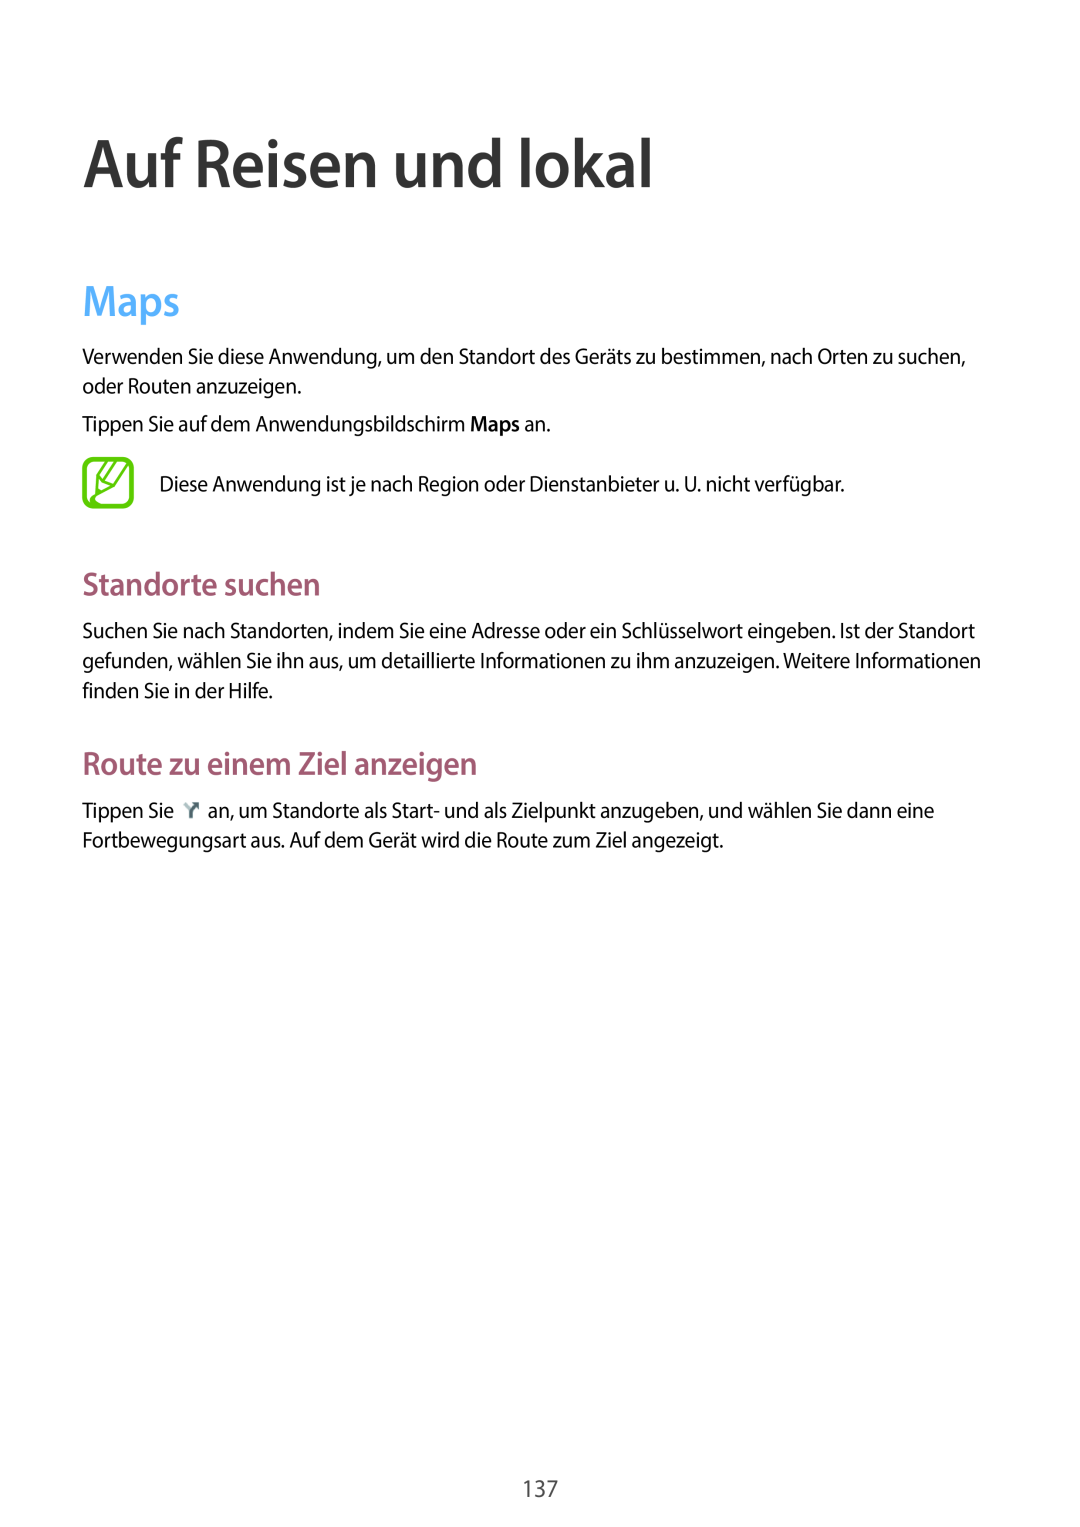 Samsung SM-C1010ZKADBT, SM-C1010ZWAEUR manual Auf Reisen und lokal, Maps, Standorte suchen, Route zu einem Ziel anzeigen 